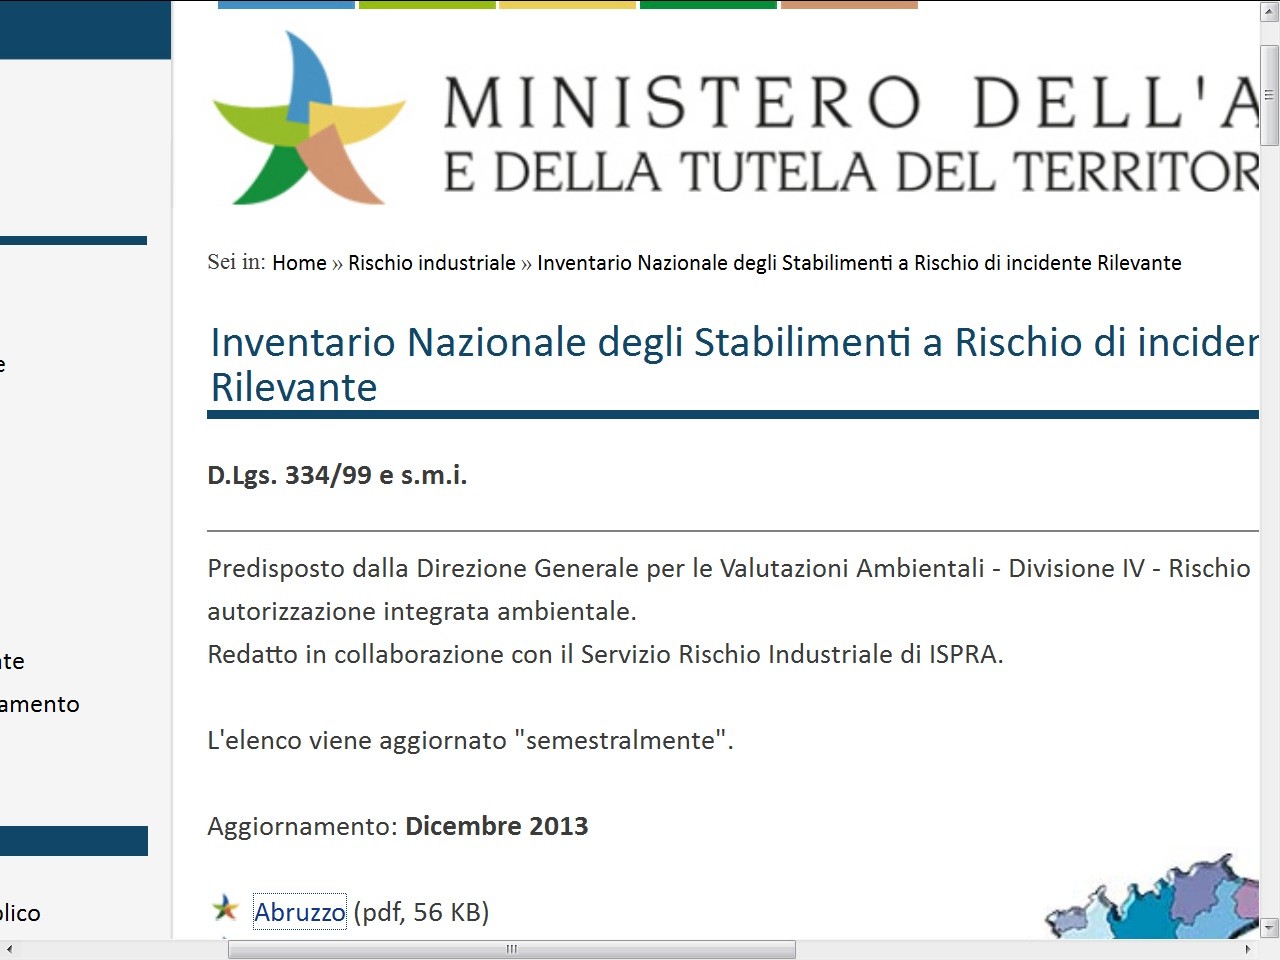 screenshot del sito del Ministero dell'Ambiente, pagina dell'Inventario Nazionale Stabilimenti a rischio incidente rilevante